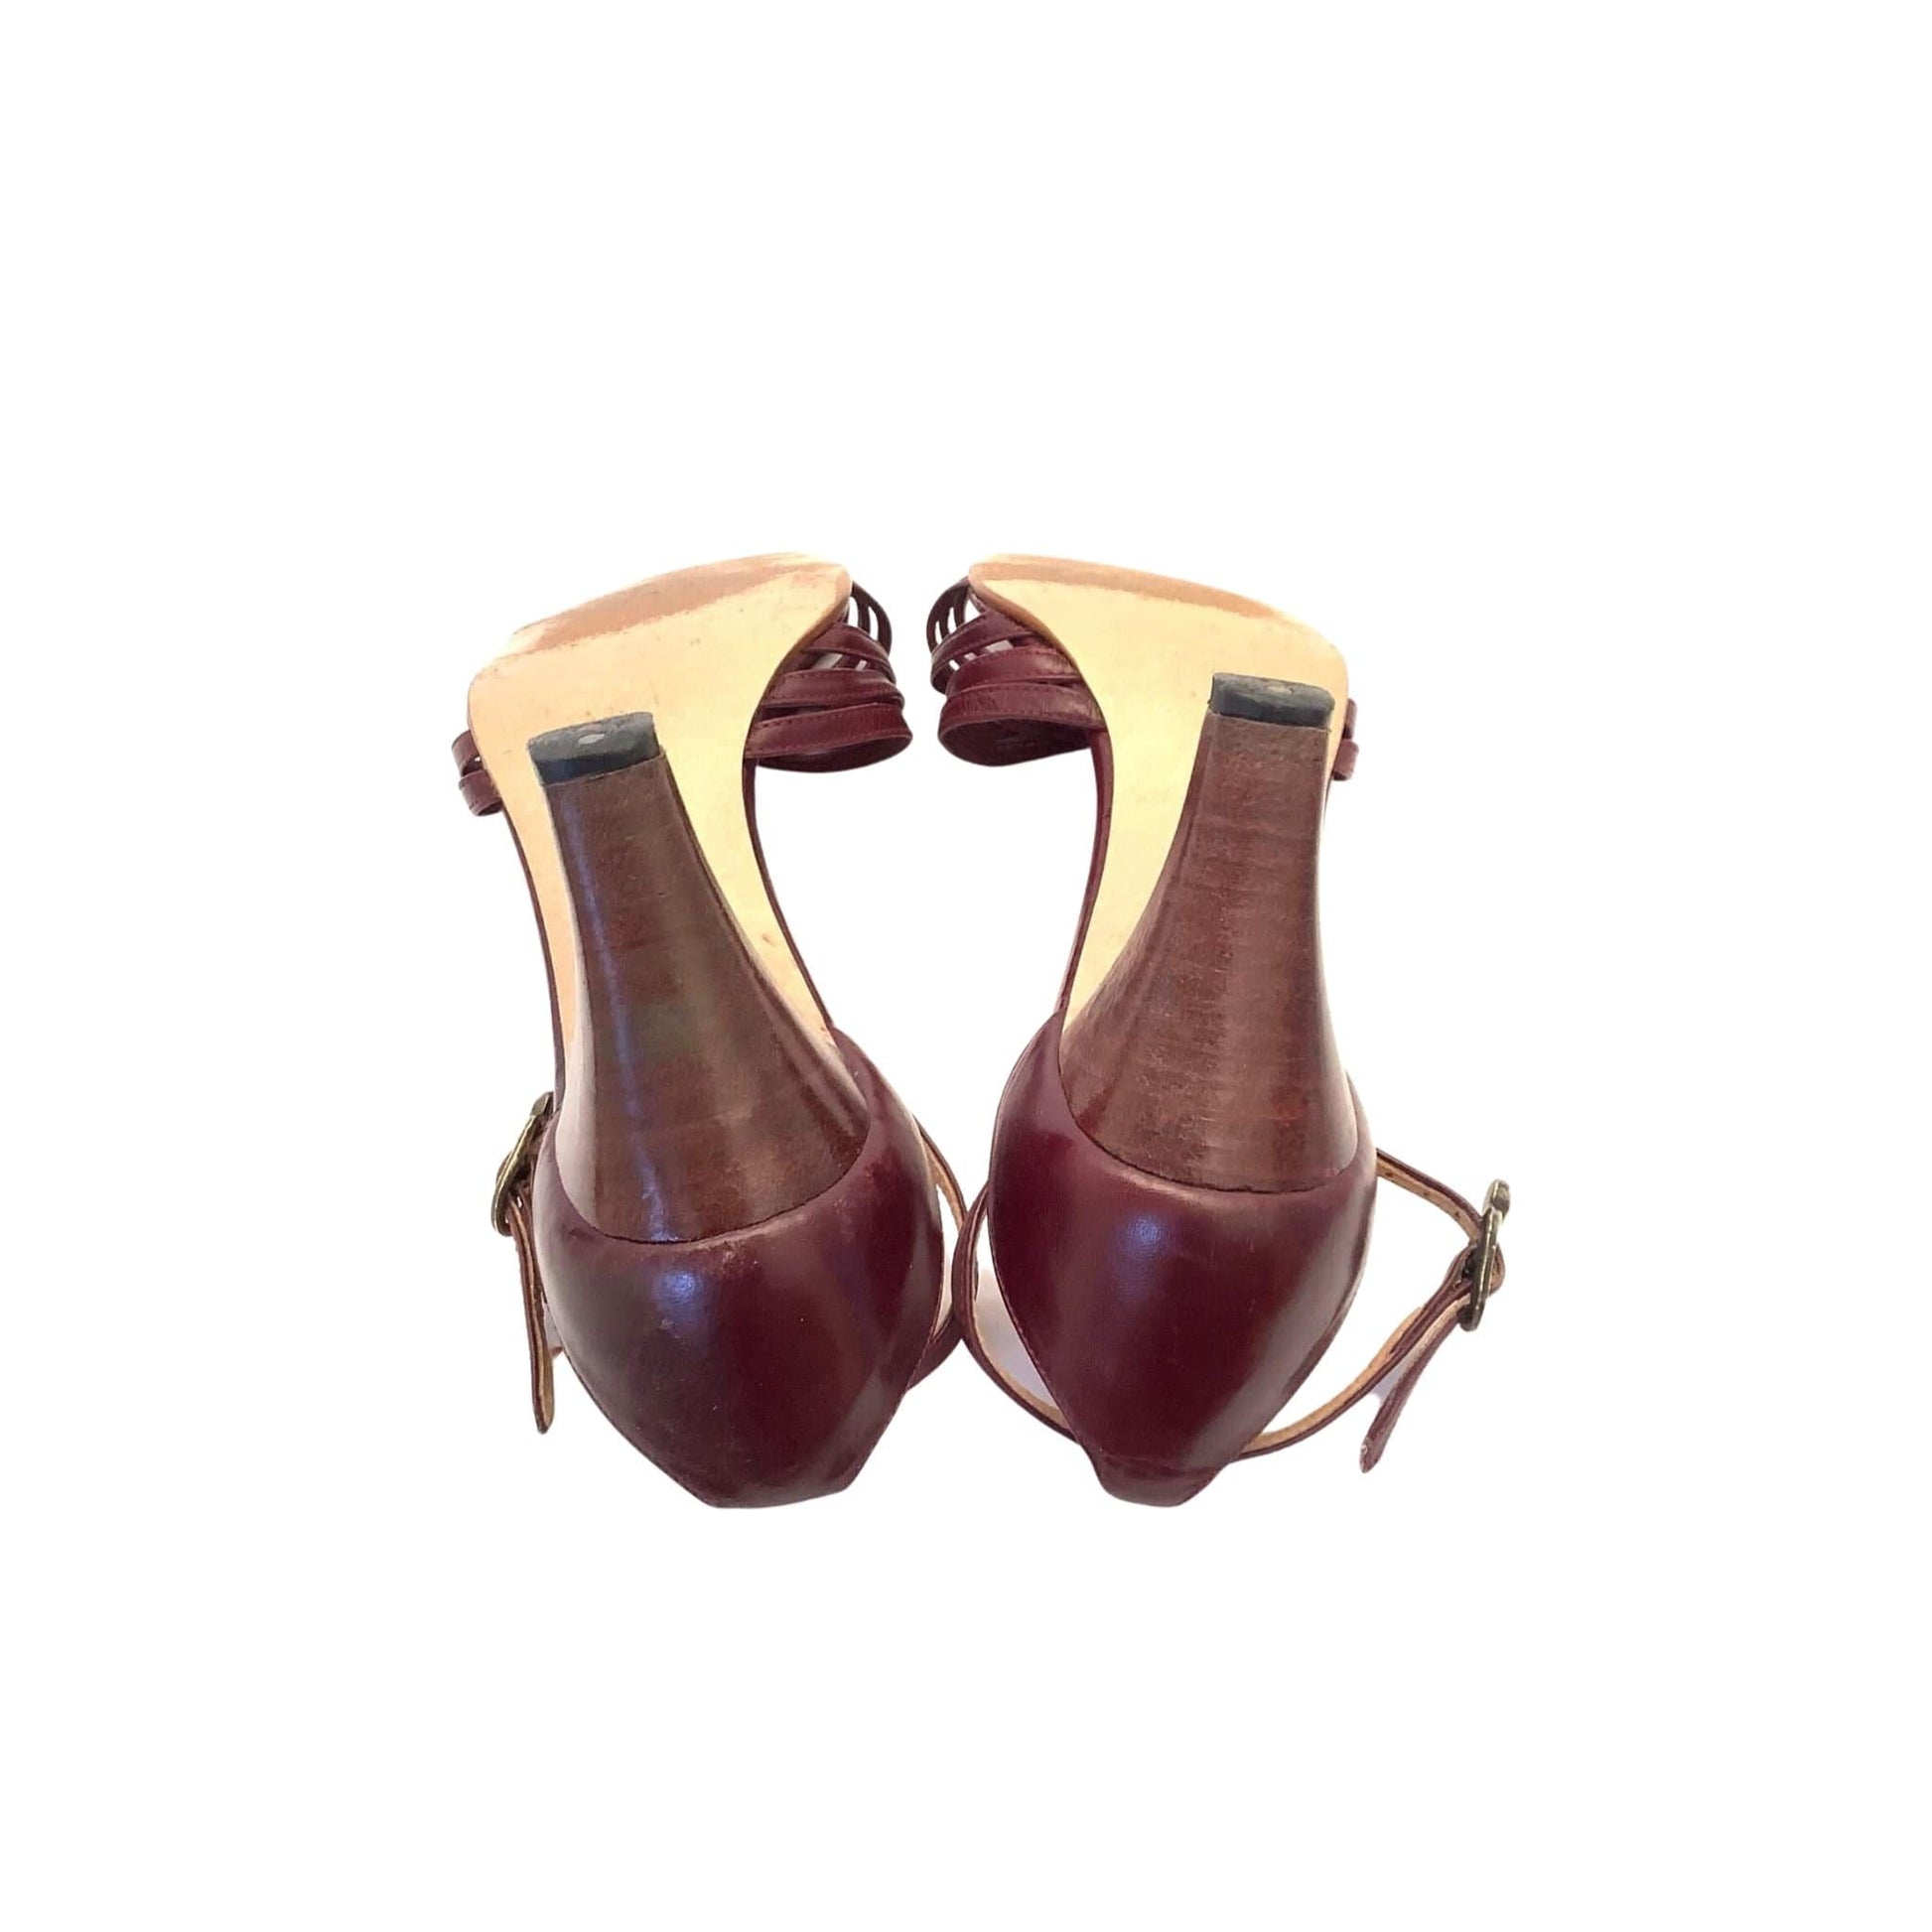 1980s Heeled Sandals 7 / Burgundy / Vintage 1980s